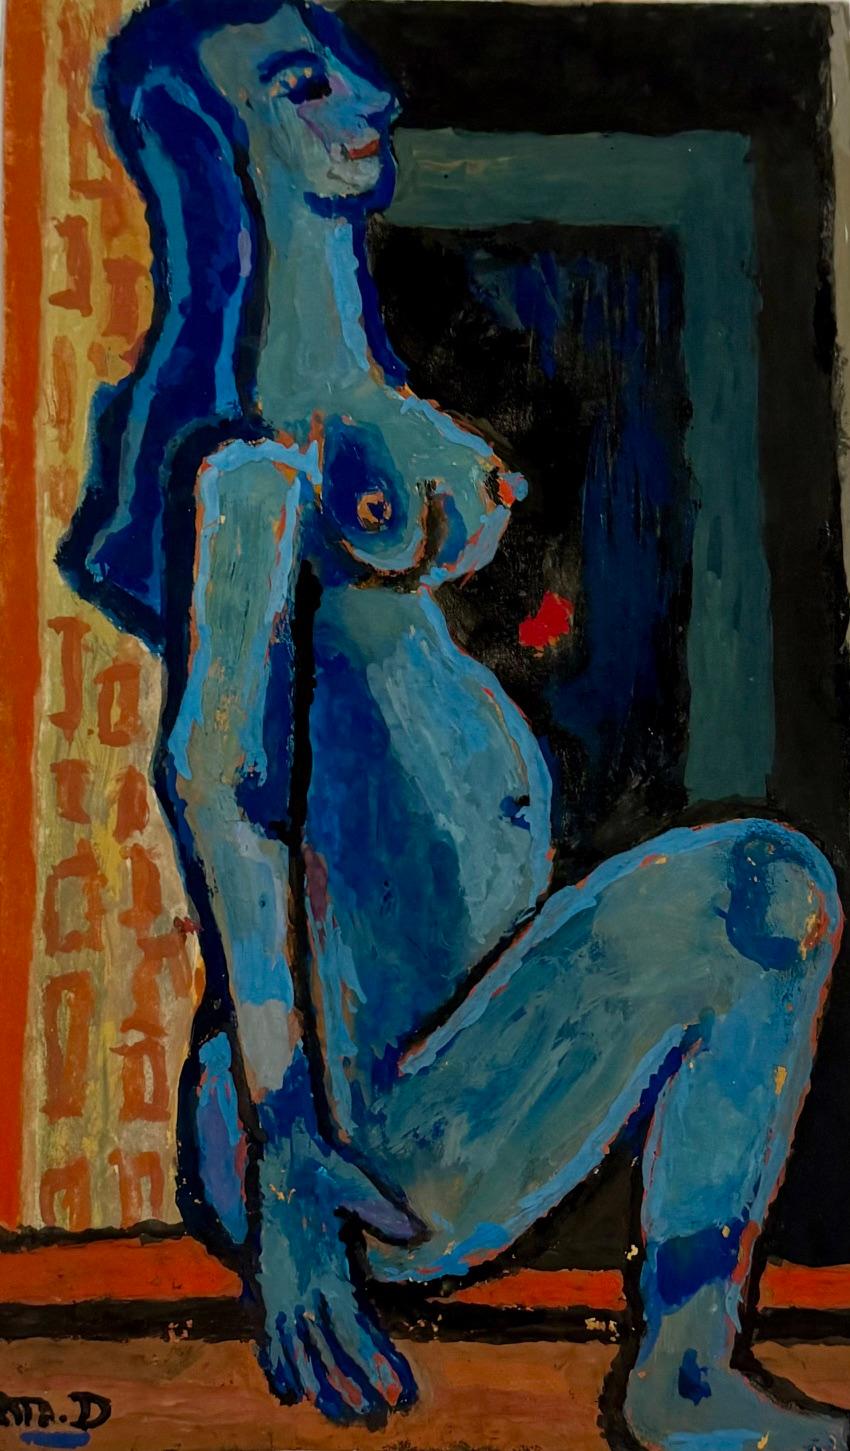 Michel Debiève Abstract Drawing – Blaue Figur sitzend von Michel Debieve, französisches kubistisches Gemälde aus der Mitte des Jahrhunderts